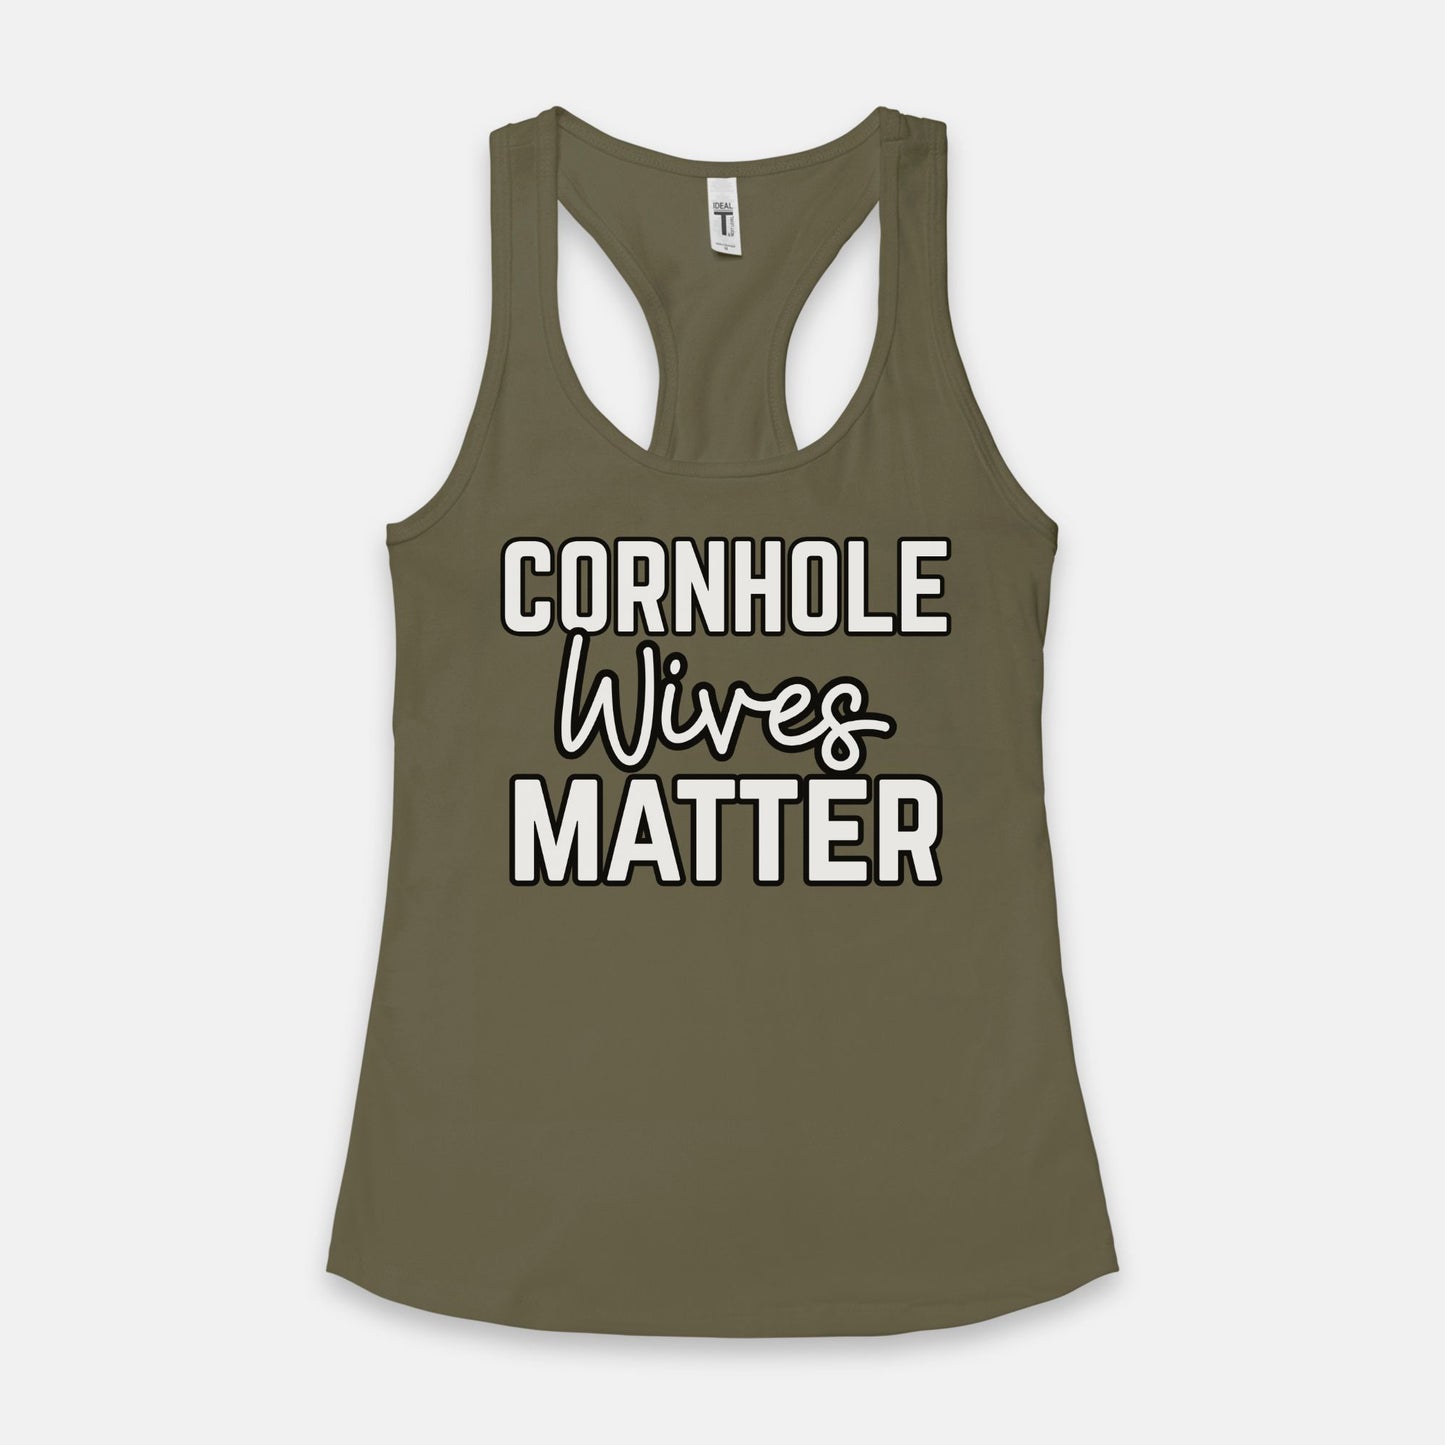 ADULT WOMENS Cornhole Wives Matter Tank